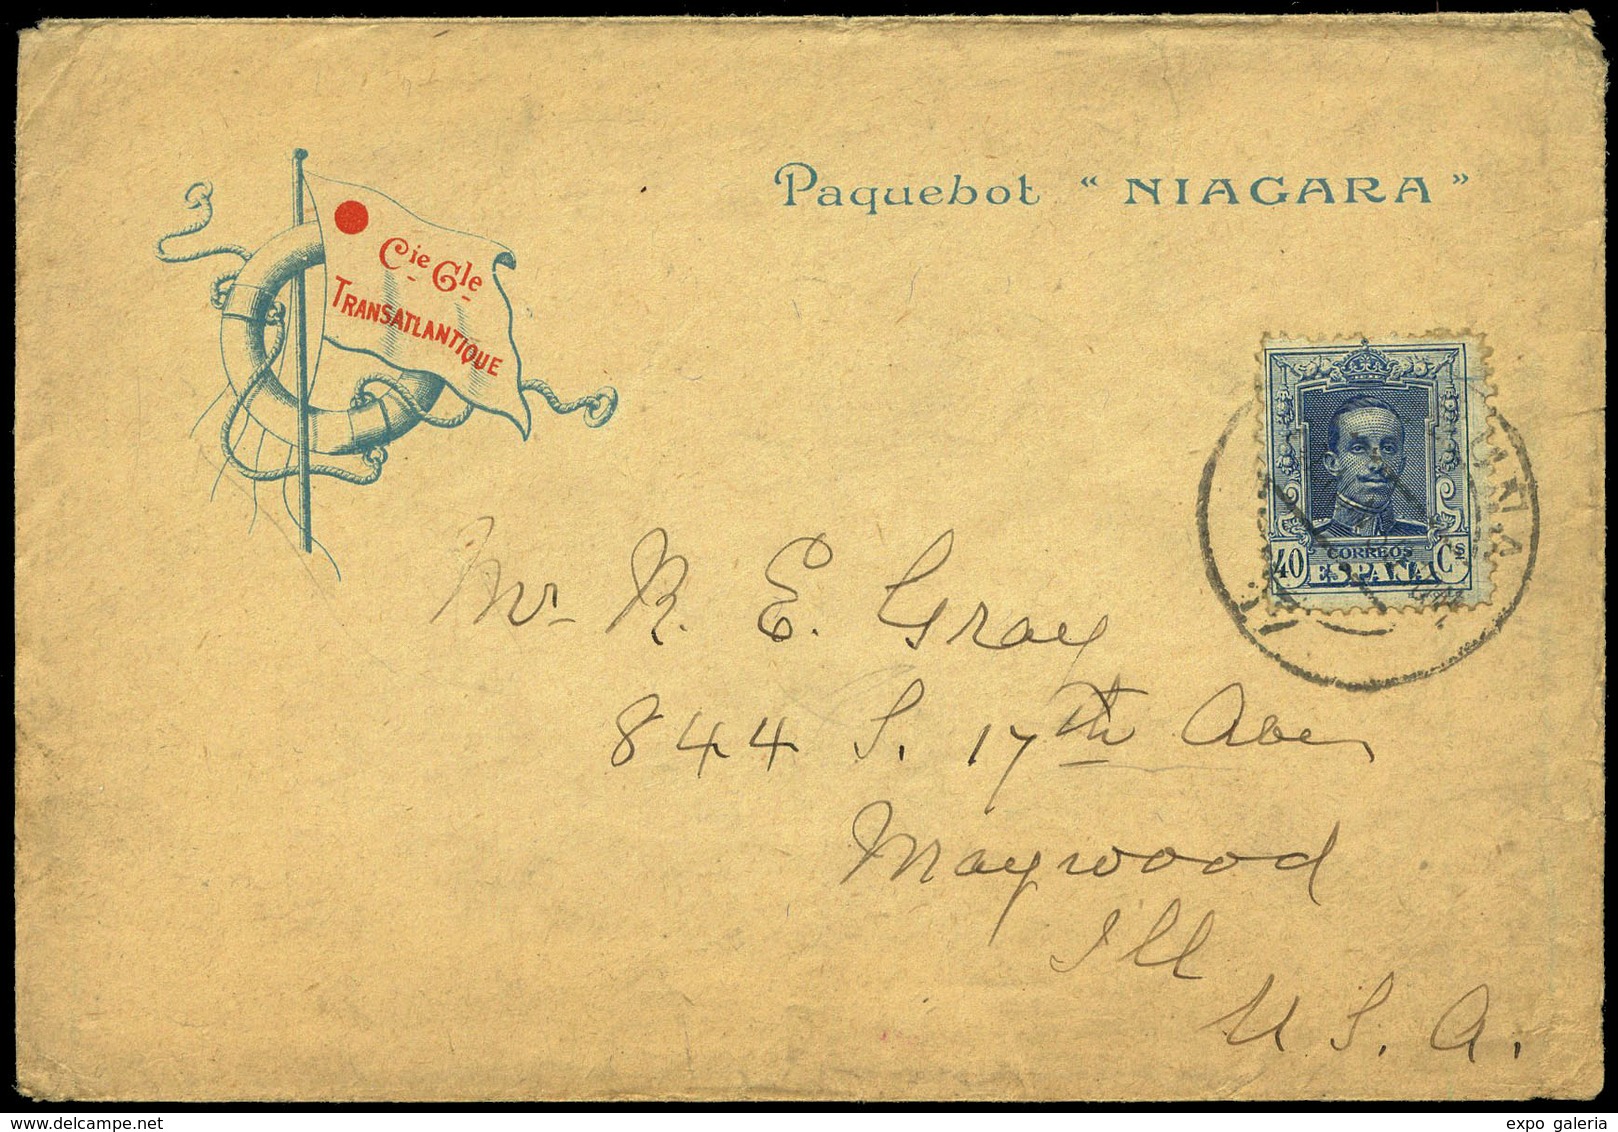 Ed. 319 - 1930.Preciosa Carta Con Membrete Ilustrado De La “La Cie. Gle. Transatlántique” Y “Paquebot Niagara” - Unused Stamps